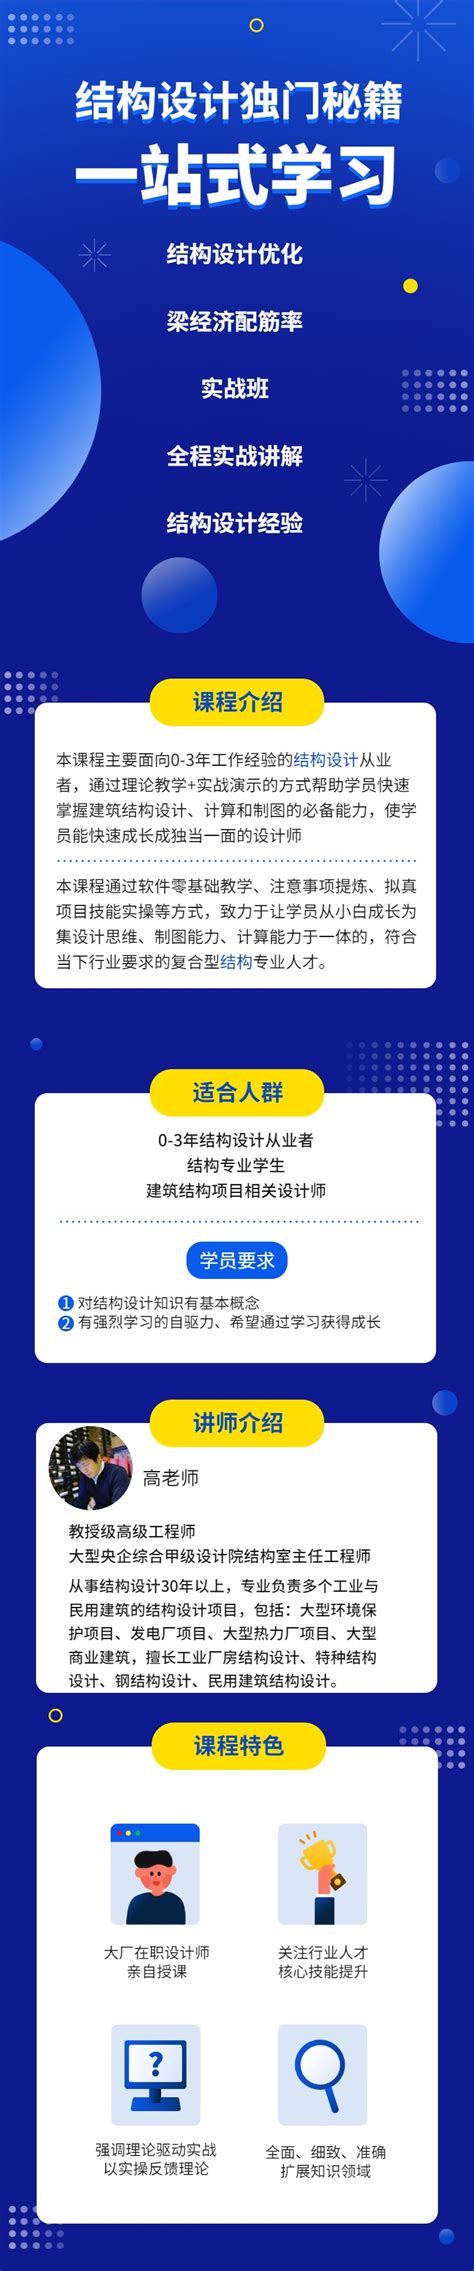 粱江通信_网站建设建设_上海佳速网络